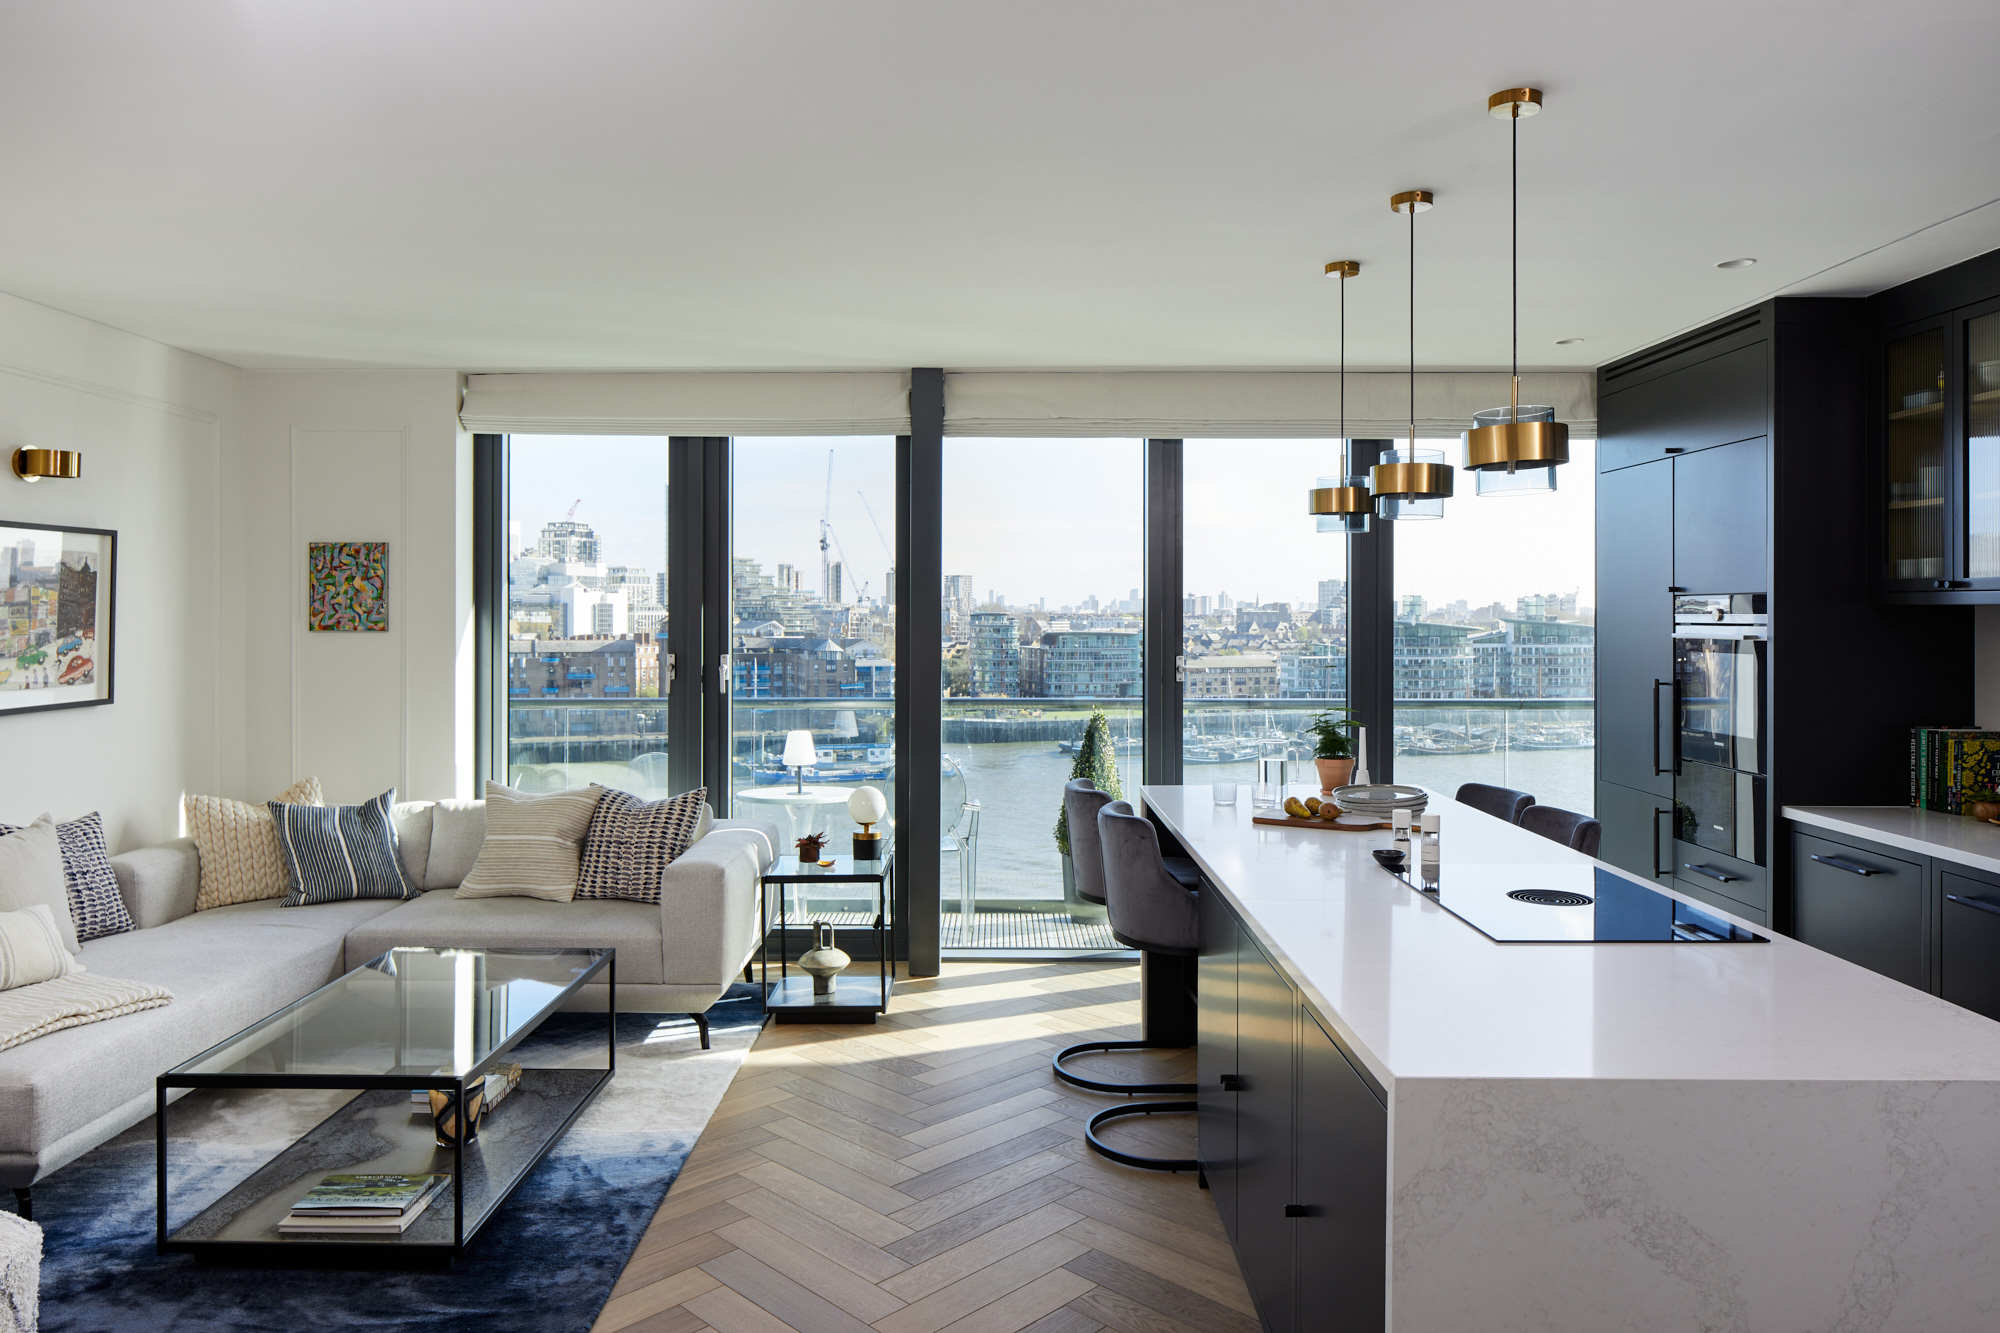 Bespoke kitchen in London penthouse